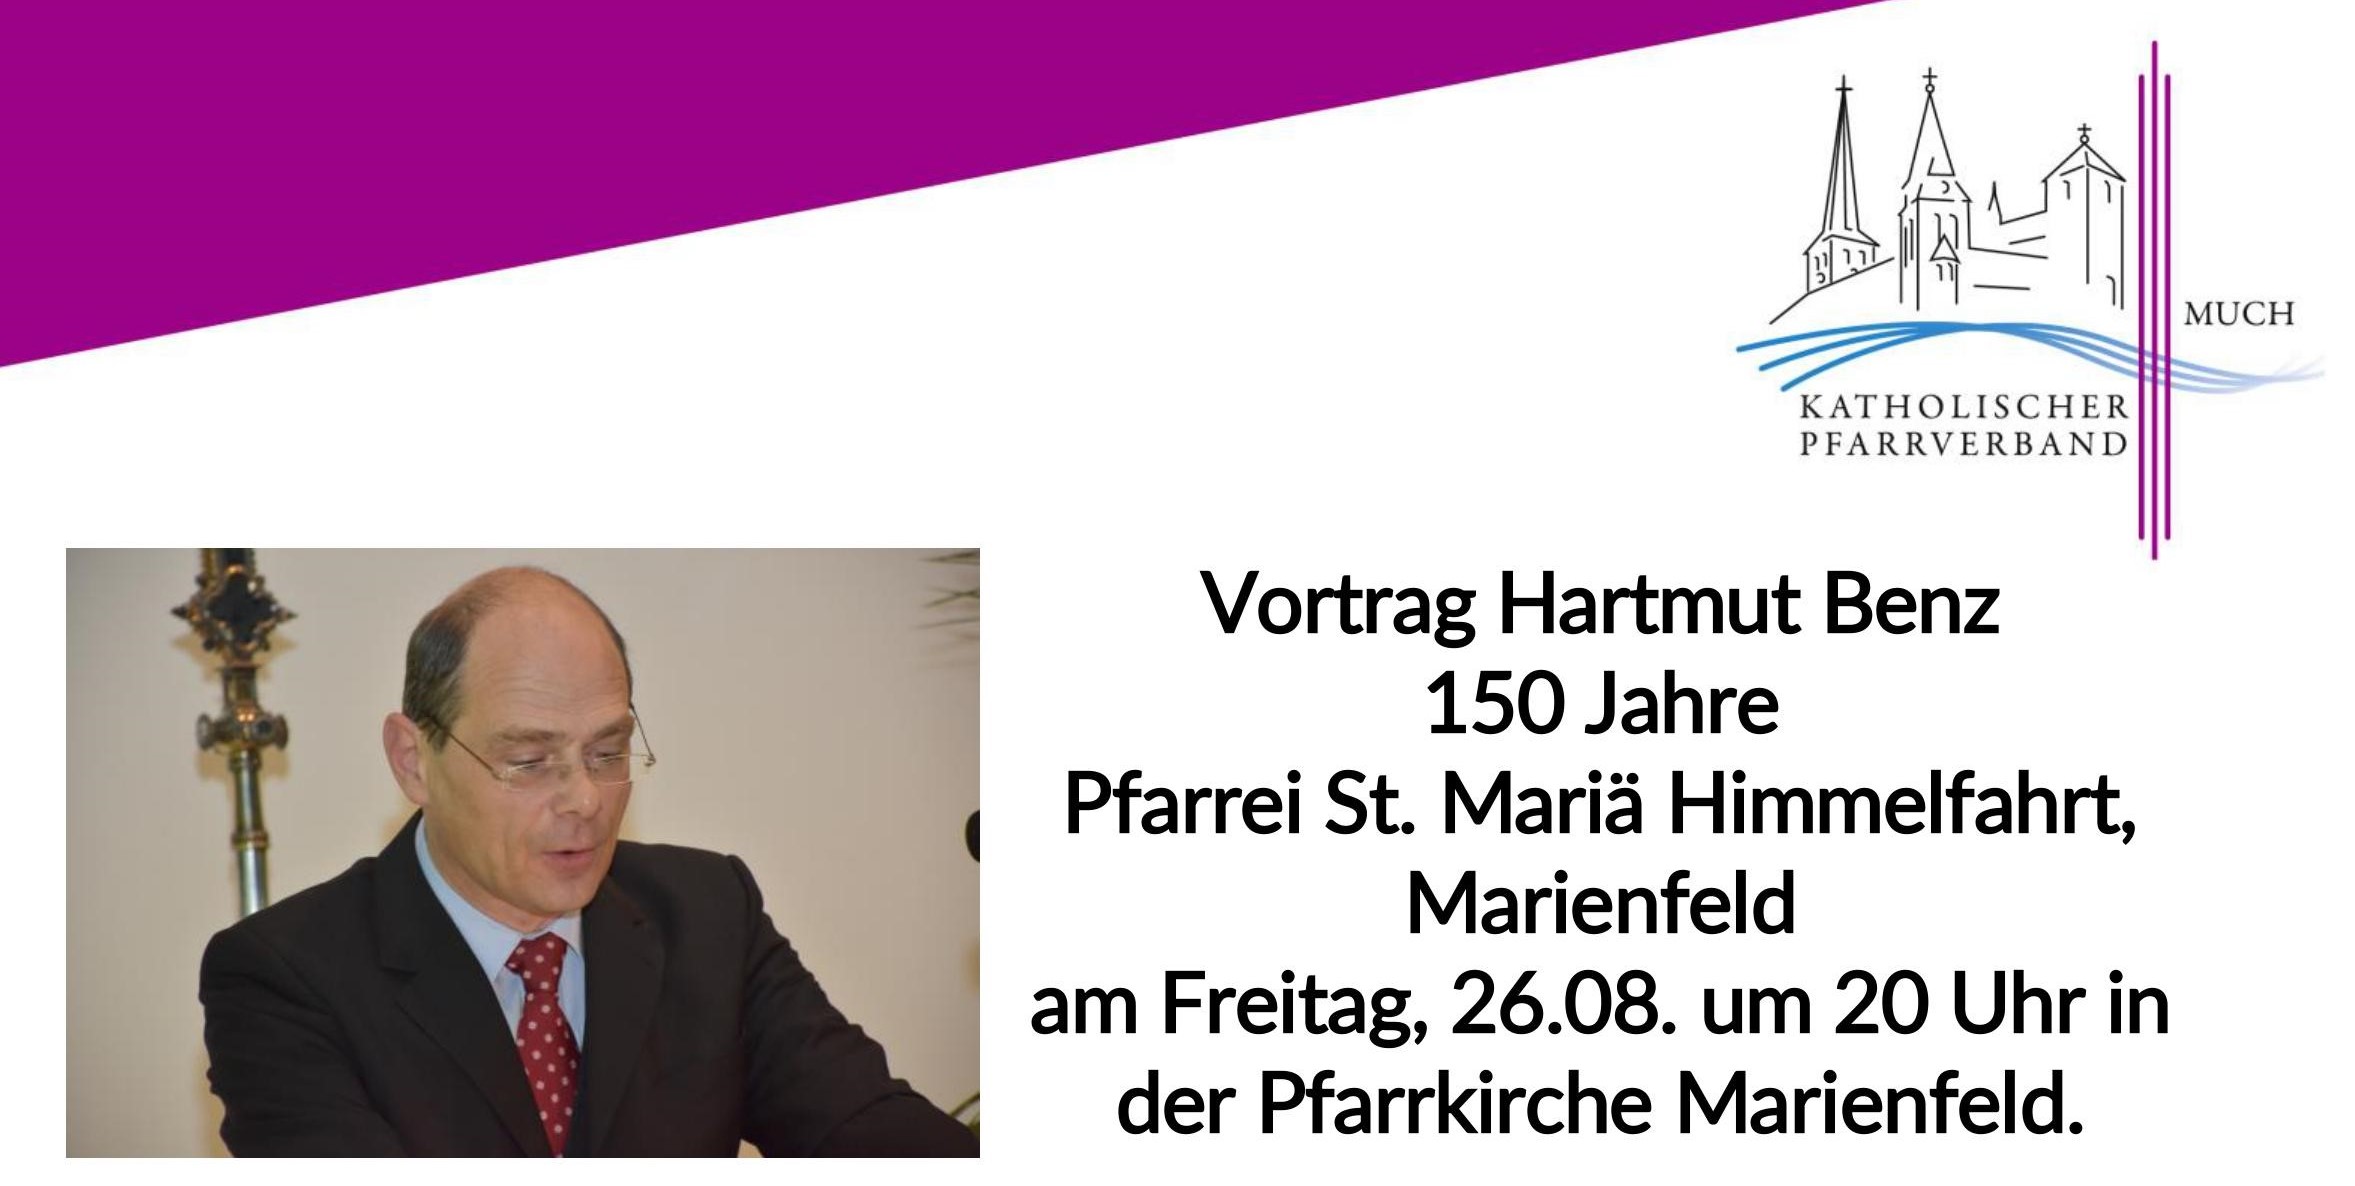 Vortrag Hartmut Benz